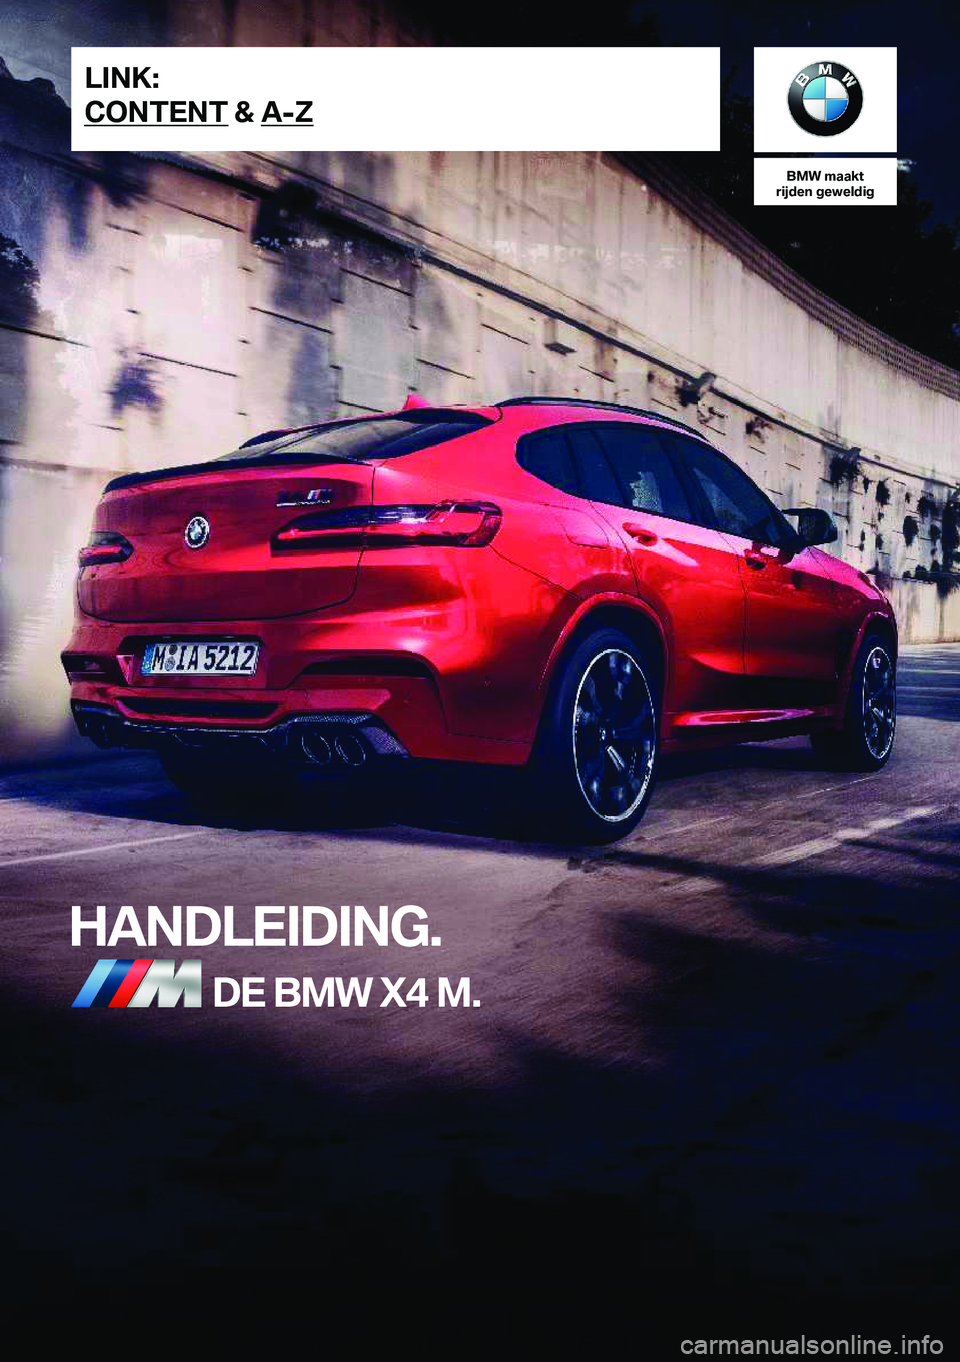 BMW X4 M 2021  Instructieboekjes (in Dutch) �B�M�W��m�a�a�k�t
�r�i�j�d�e�n��g�e�w�e�l�d�i�g
�H�A�N�D�L�E�I�D�I�N�G�.�D�E��B�M�W��X�4��M�.�L�I�N�K�:
�C�O�N�T�E�N�T��&��A�-�Z�O�n�l�i�n�e��E�d�i�t�i�o�n��f�o�r��P�a�r�t��n�o�.��0�1�4�0�